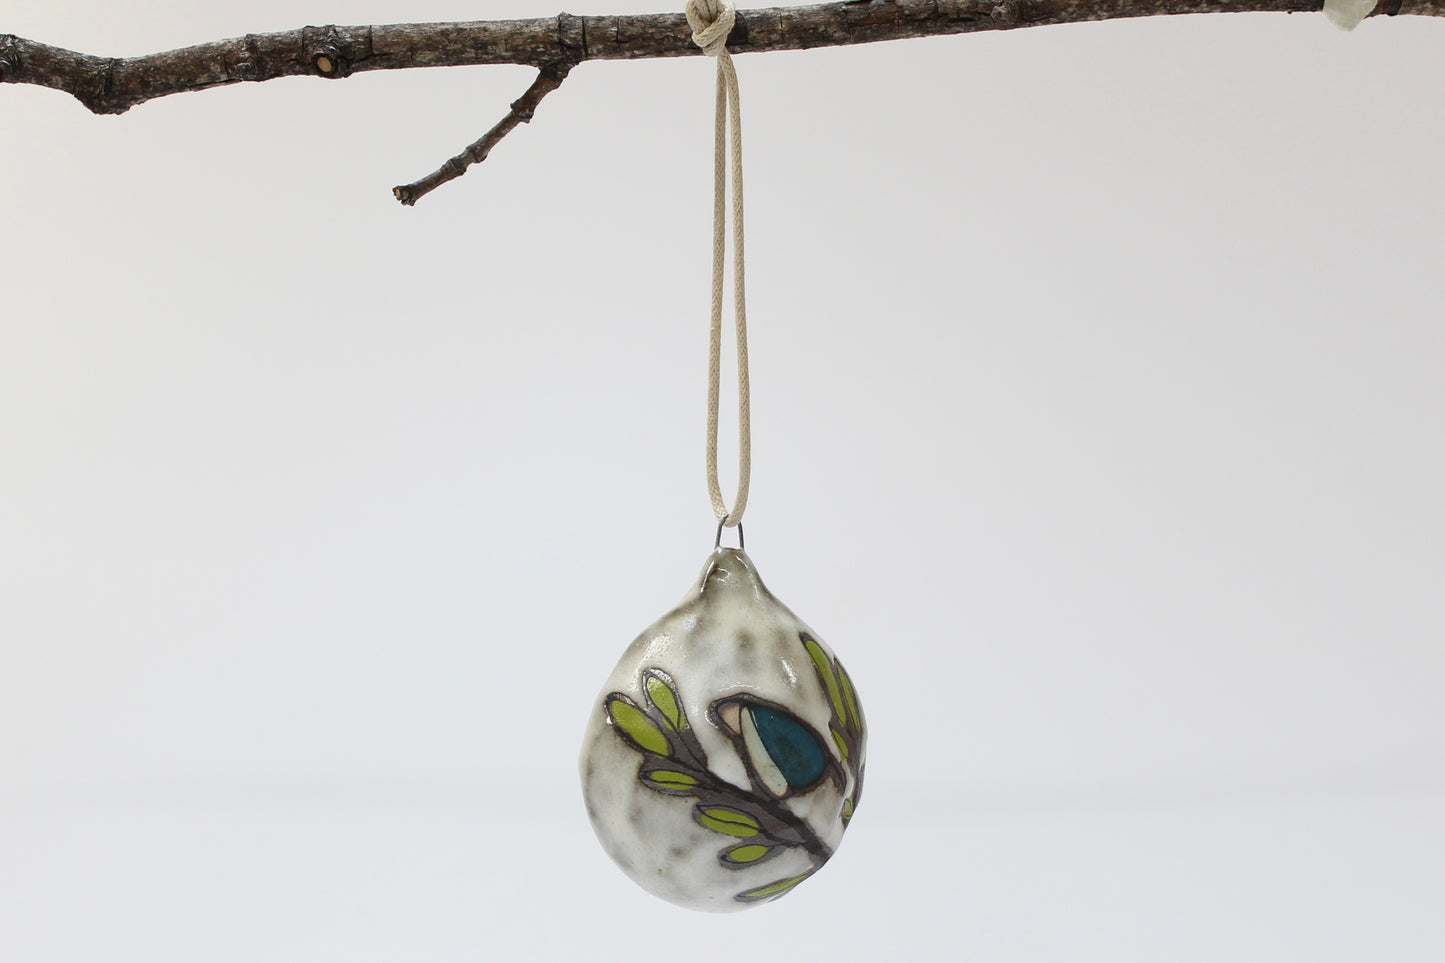 067.  Teal Bird Bulbous Ornament.  3" x 2 1/2" x 1 1/2".